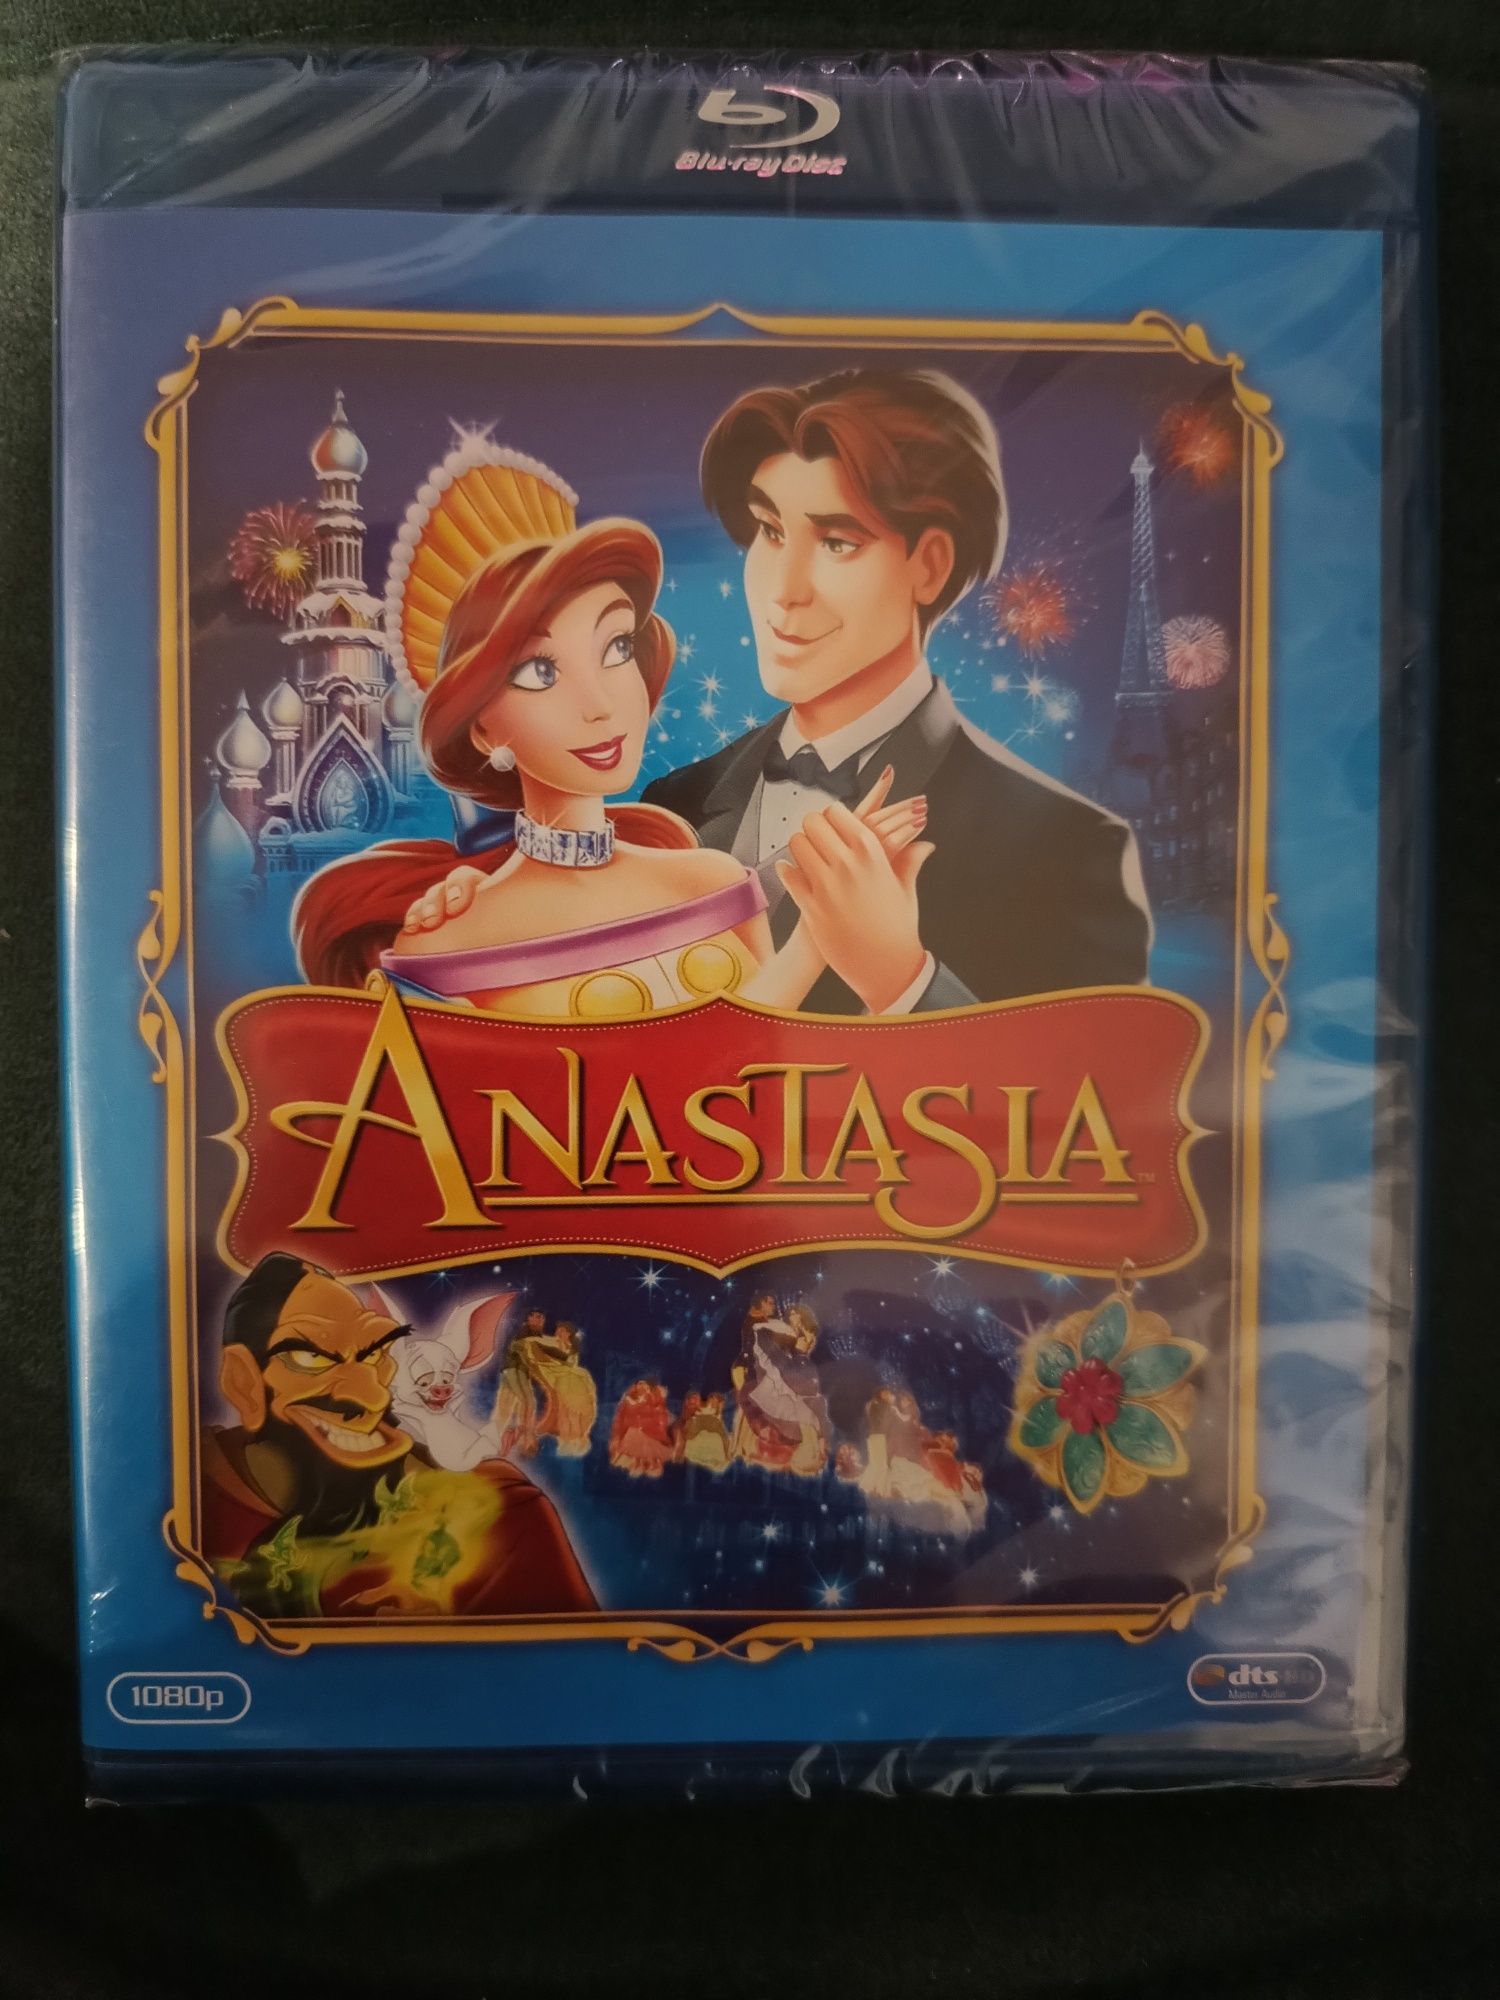 Anastasia Blu-ray Disc